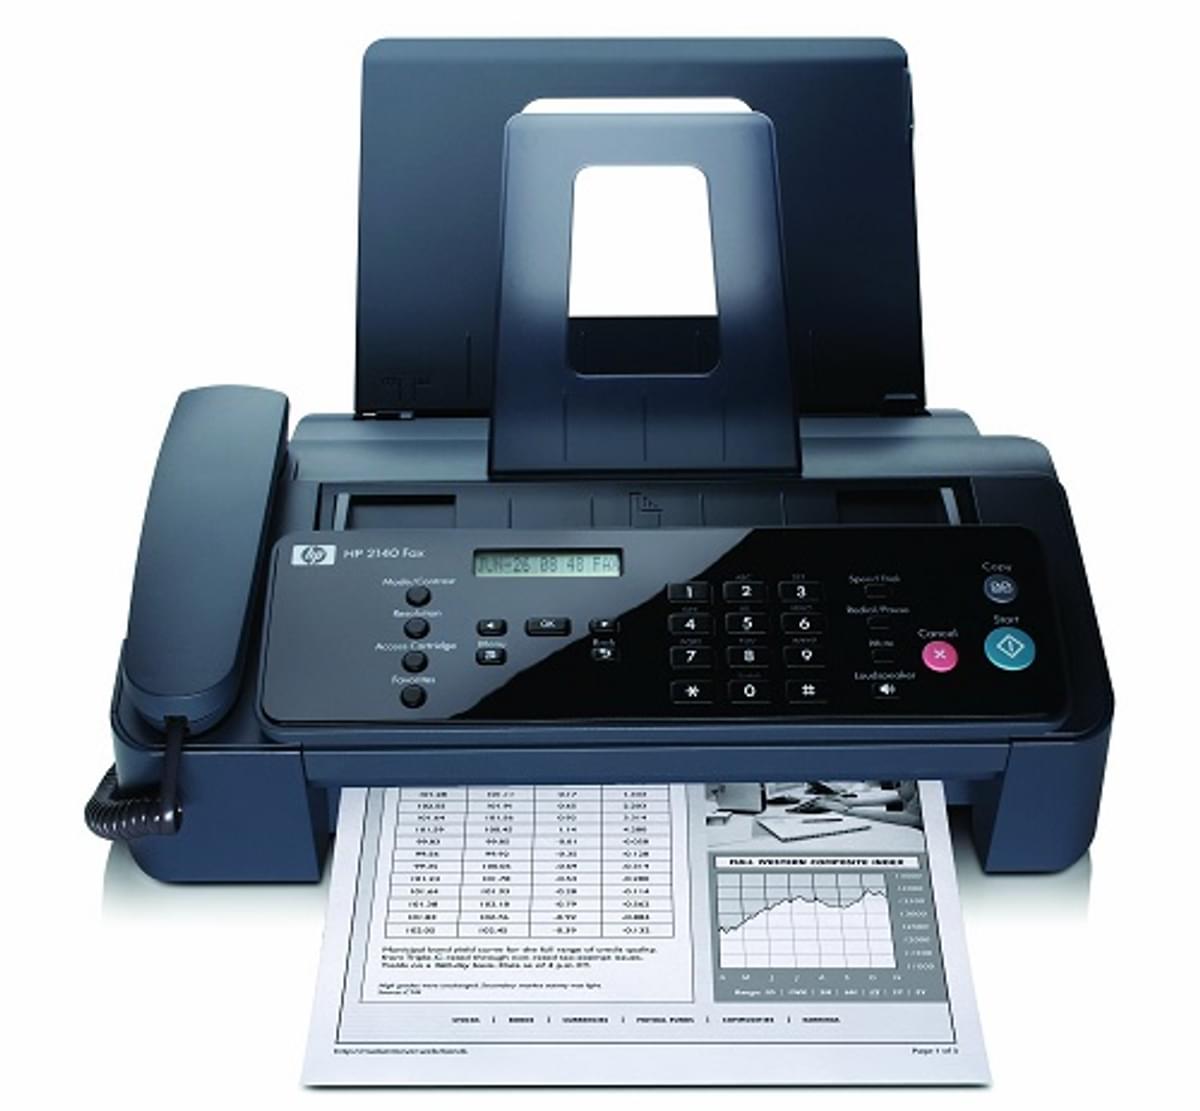 99% van de apothekers gebruikt nog regelmatig de fax image